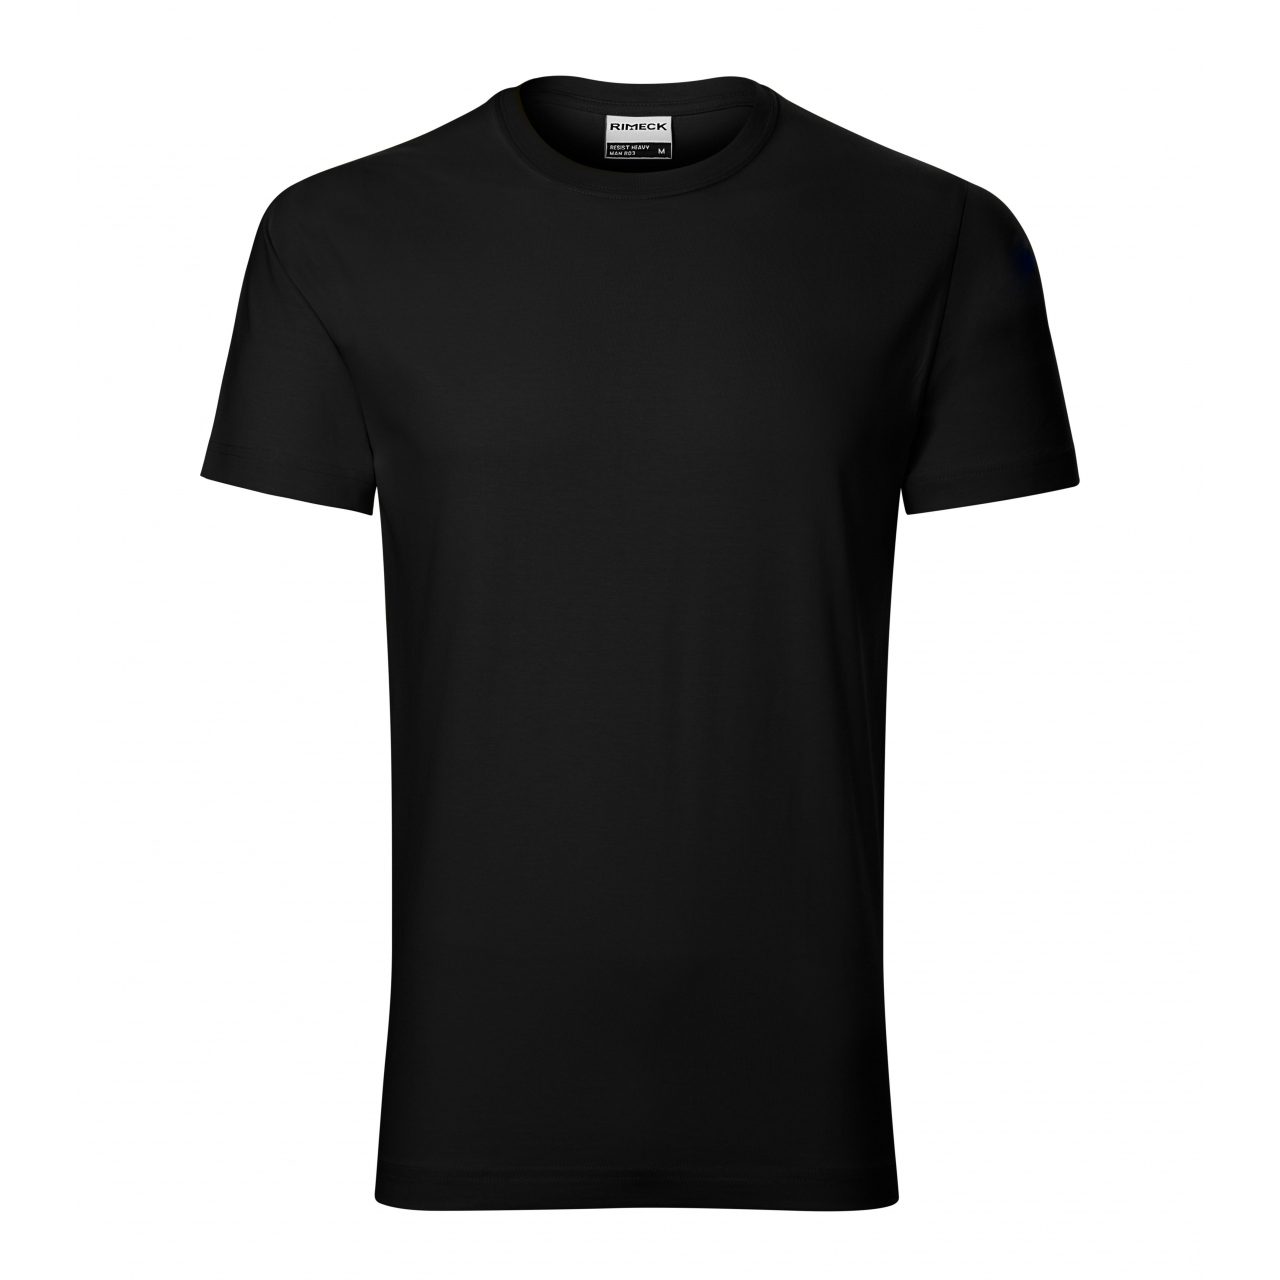 Tričko pánské Rimeck Resist - černé, XL